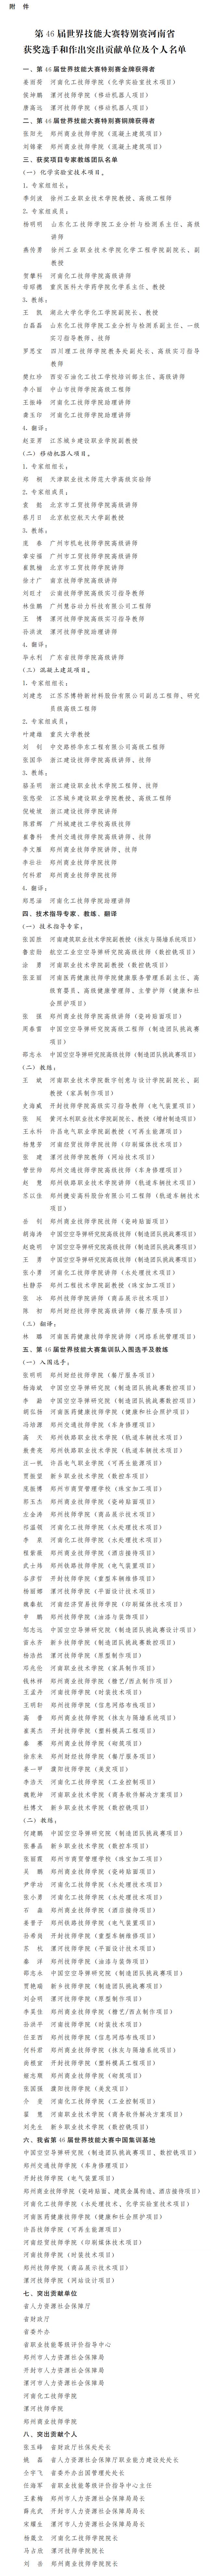 河南省人民政府办公厅关于表扬第46届世界技能大赛特别赛河南省获奖选手和作出突出贡献单位及个人的通报